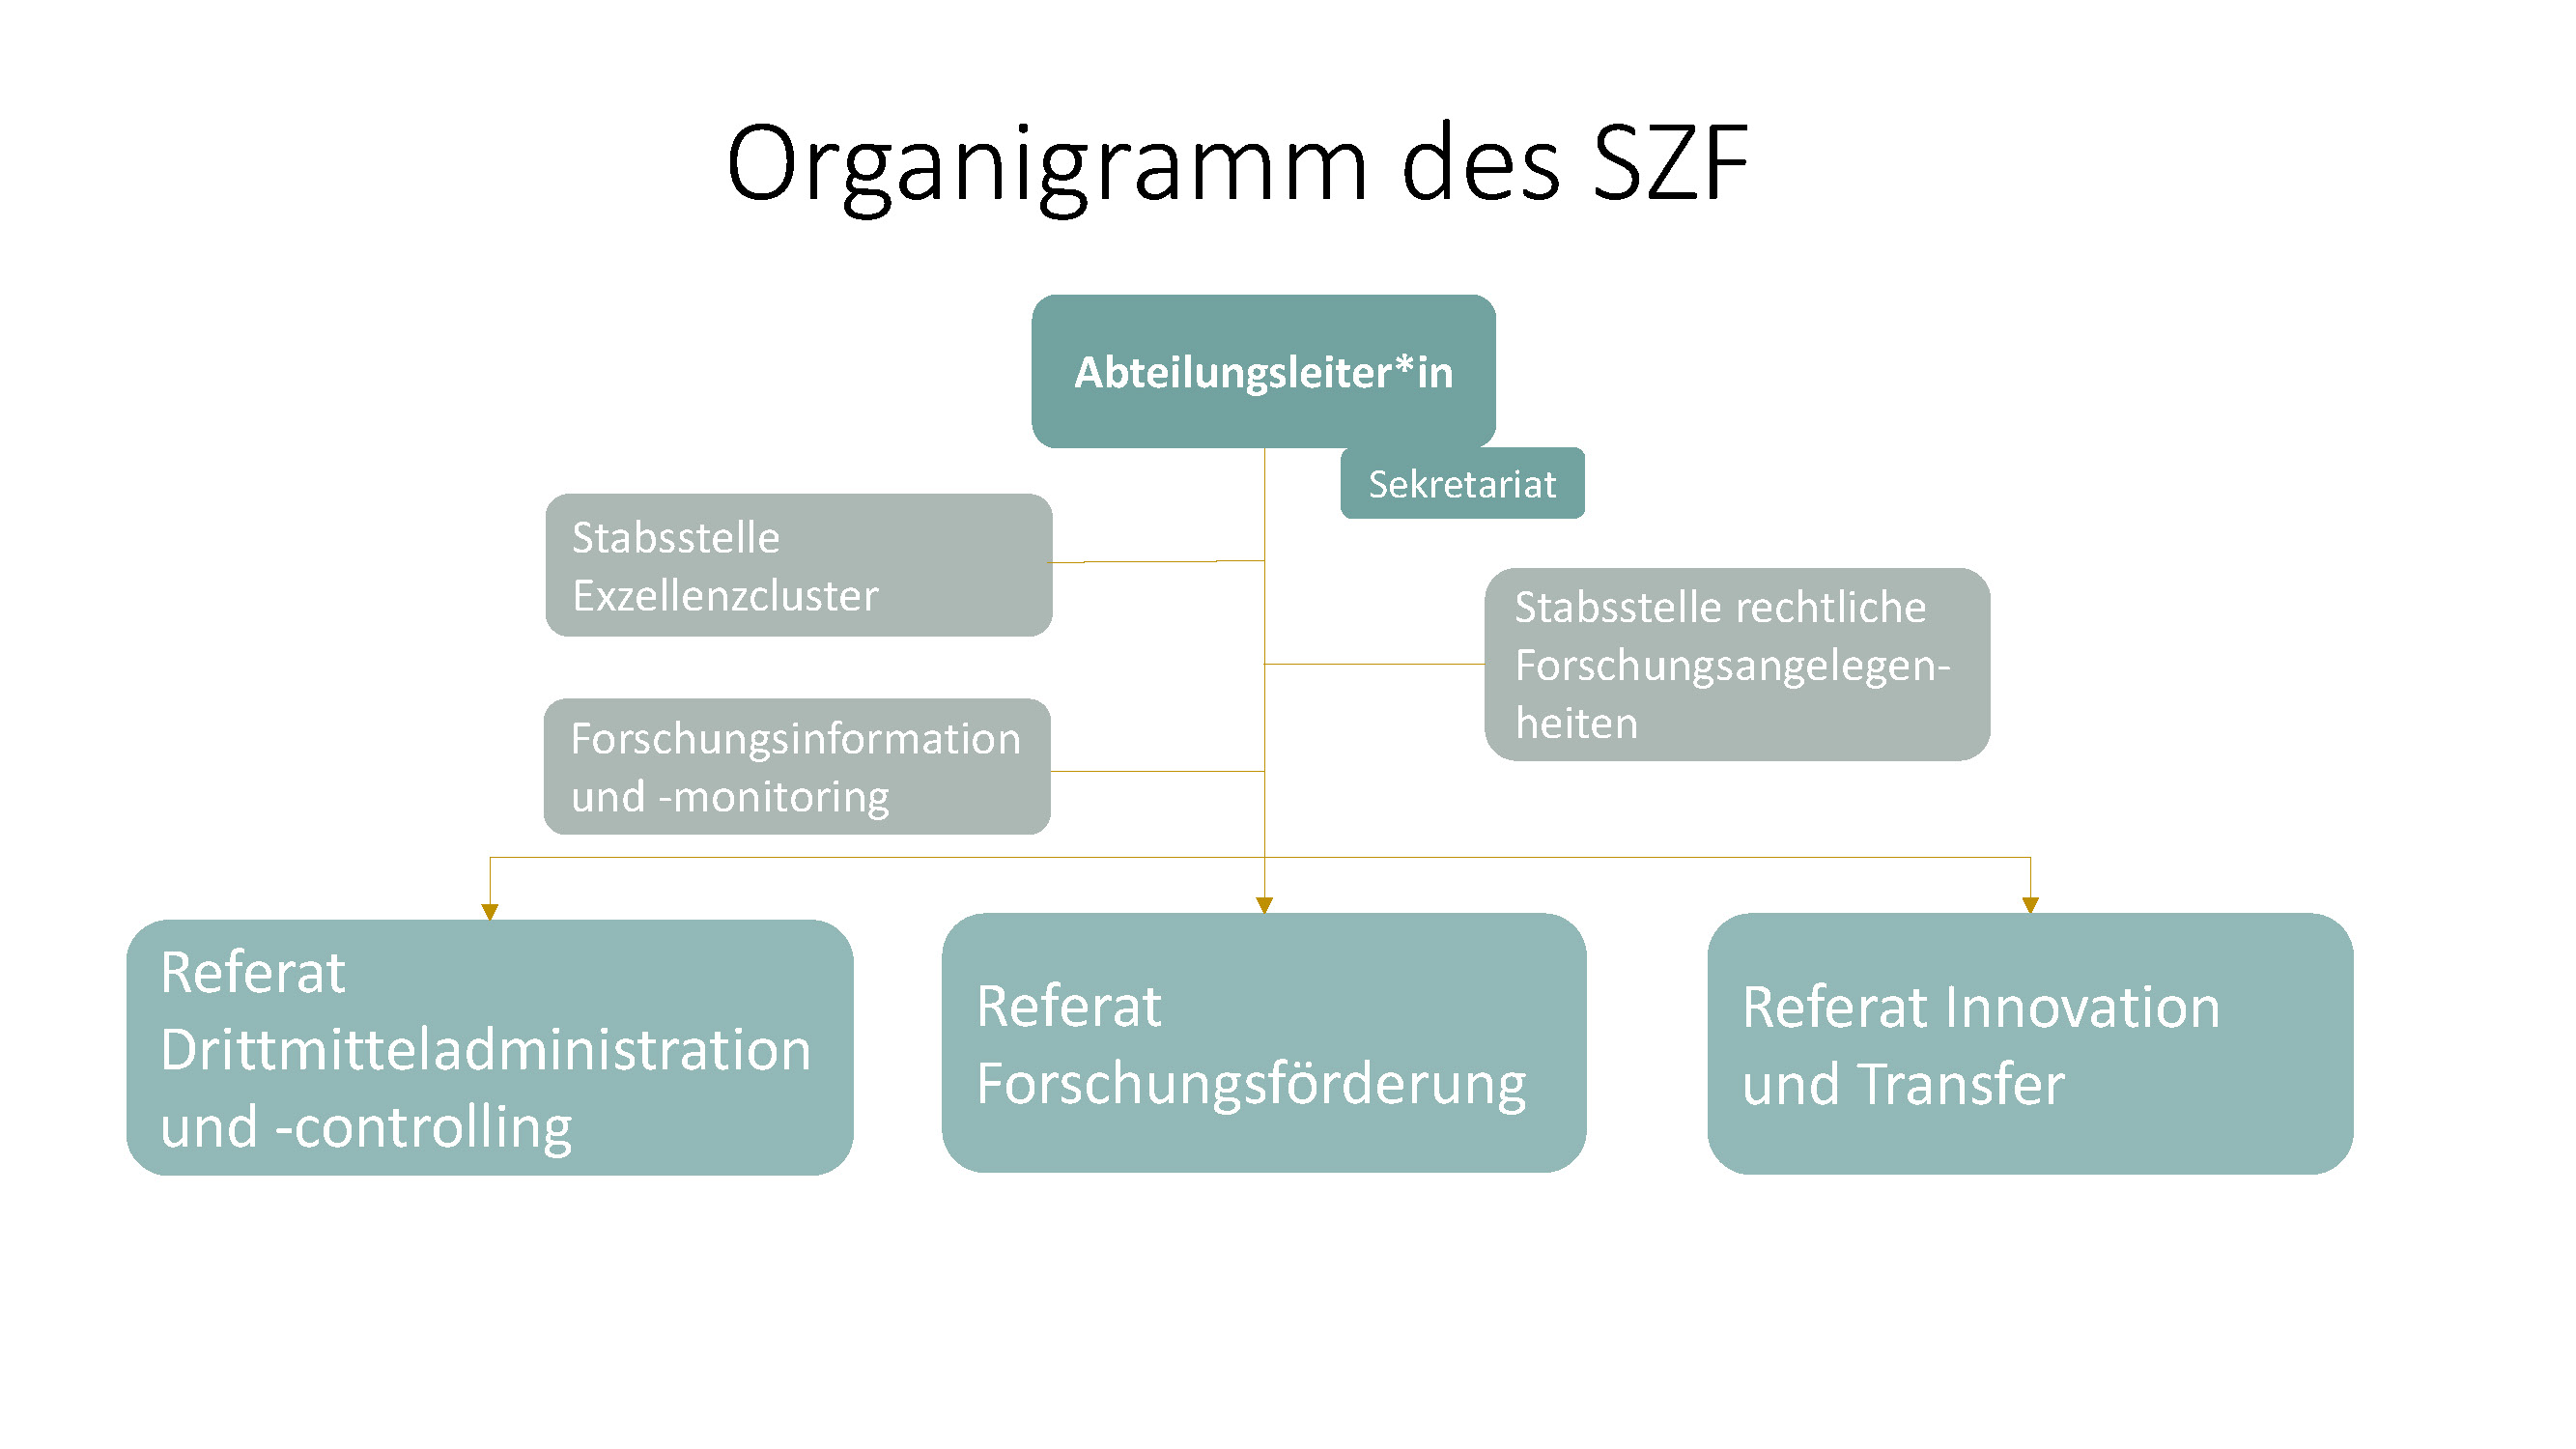 20221006_Organigramm SZF_NEW.jpg